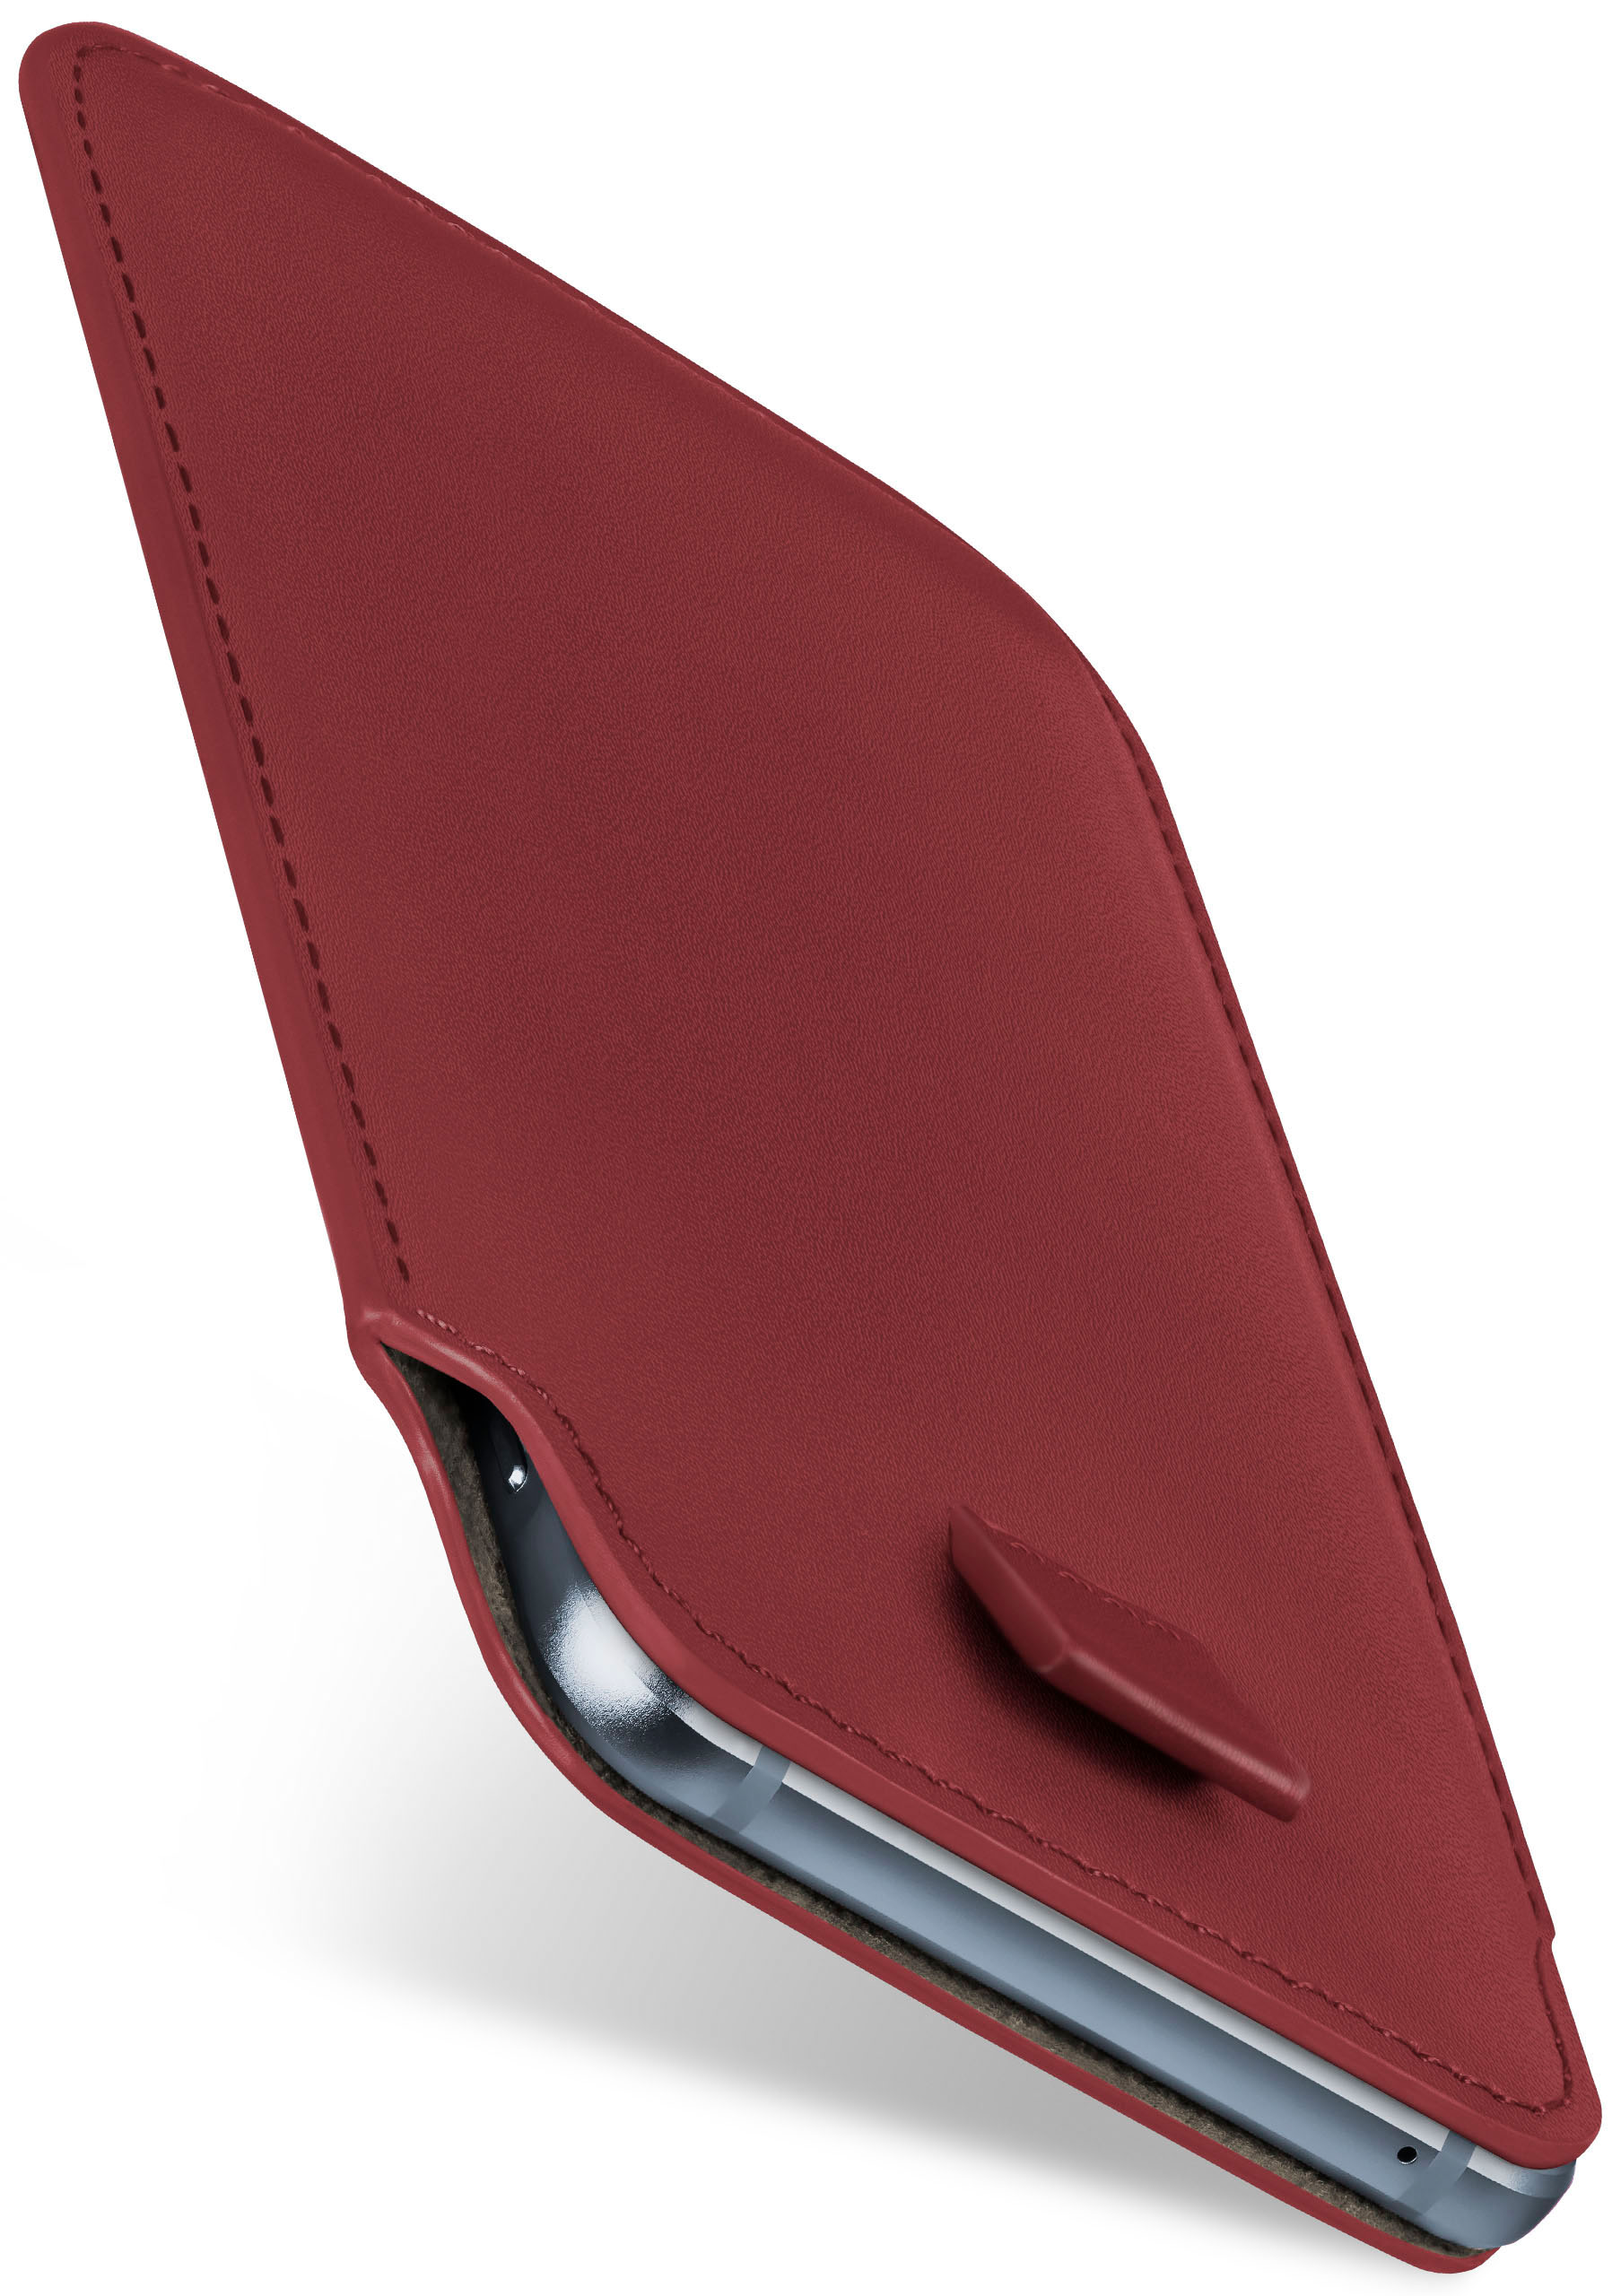 MOEX Cover, Huawei, (2019), Maroon-Red Y6 Case, Full Slide